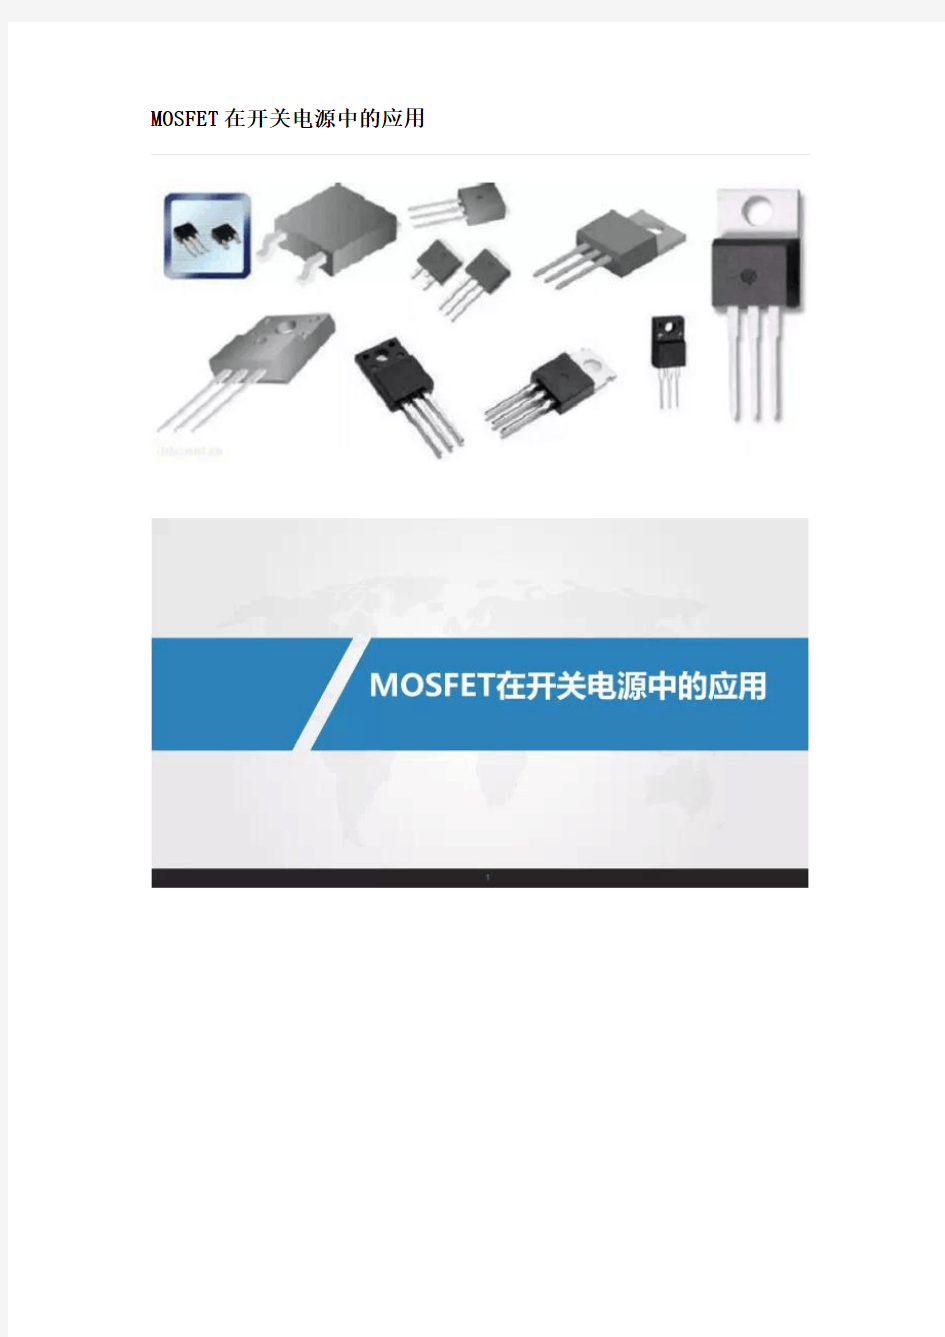 MOSFET在开关电源中的应用